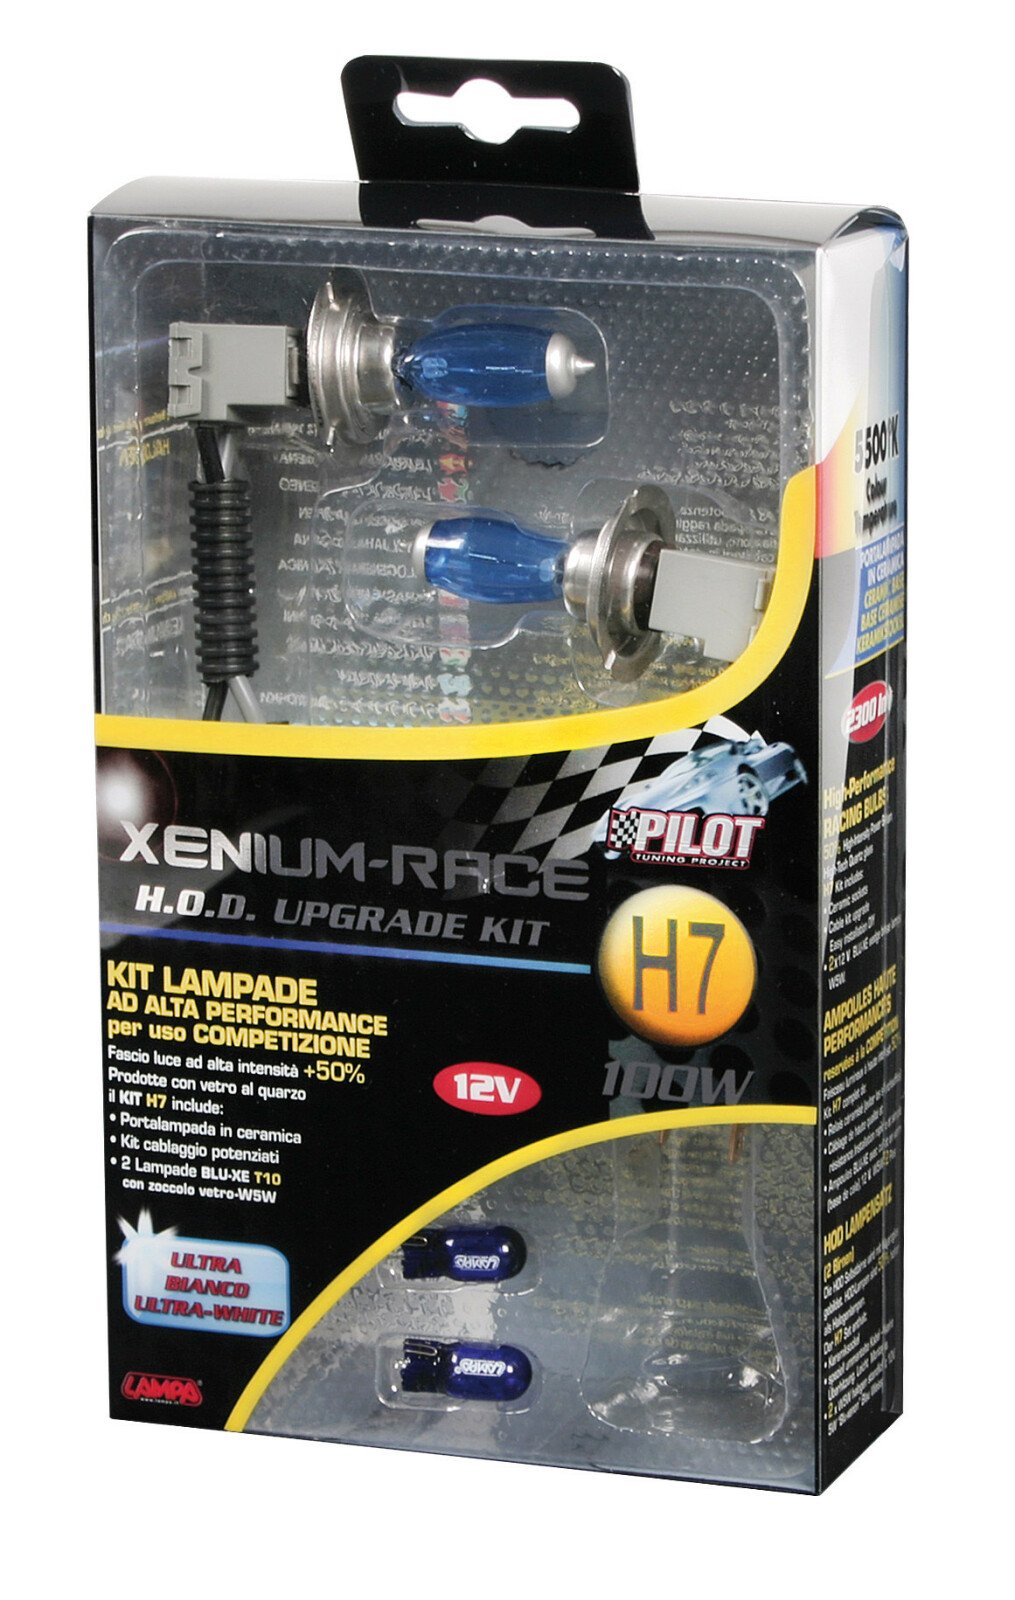 12V - H7 - 100W Xenium Race PX26d 2pcs + Bonus pack thumb